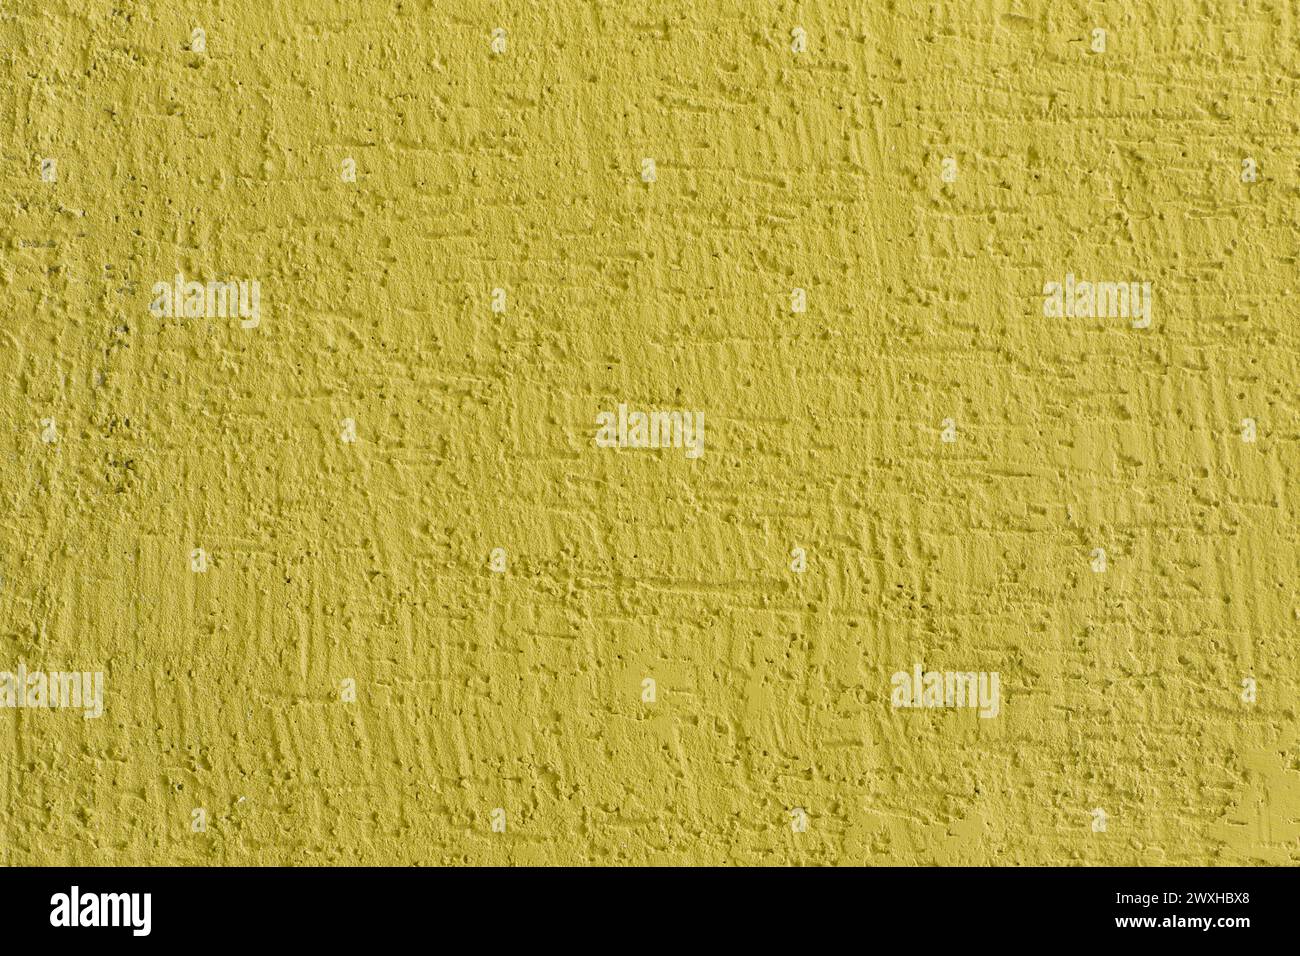 Helles gelbes lebhaftes Anstrich Oberfläche Putz Wand Textur Stuckhintergrund abstraktes Muster Hintergrund. Stockfoto